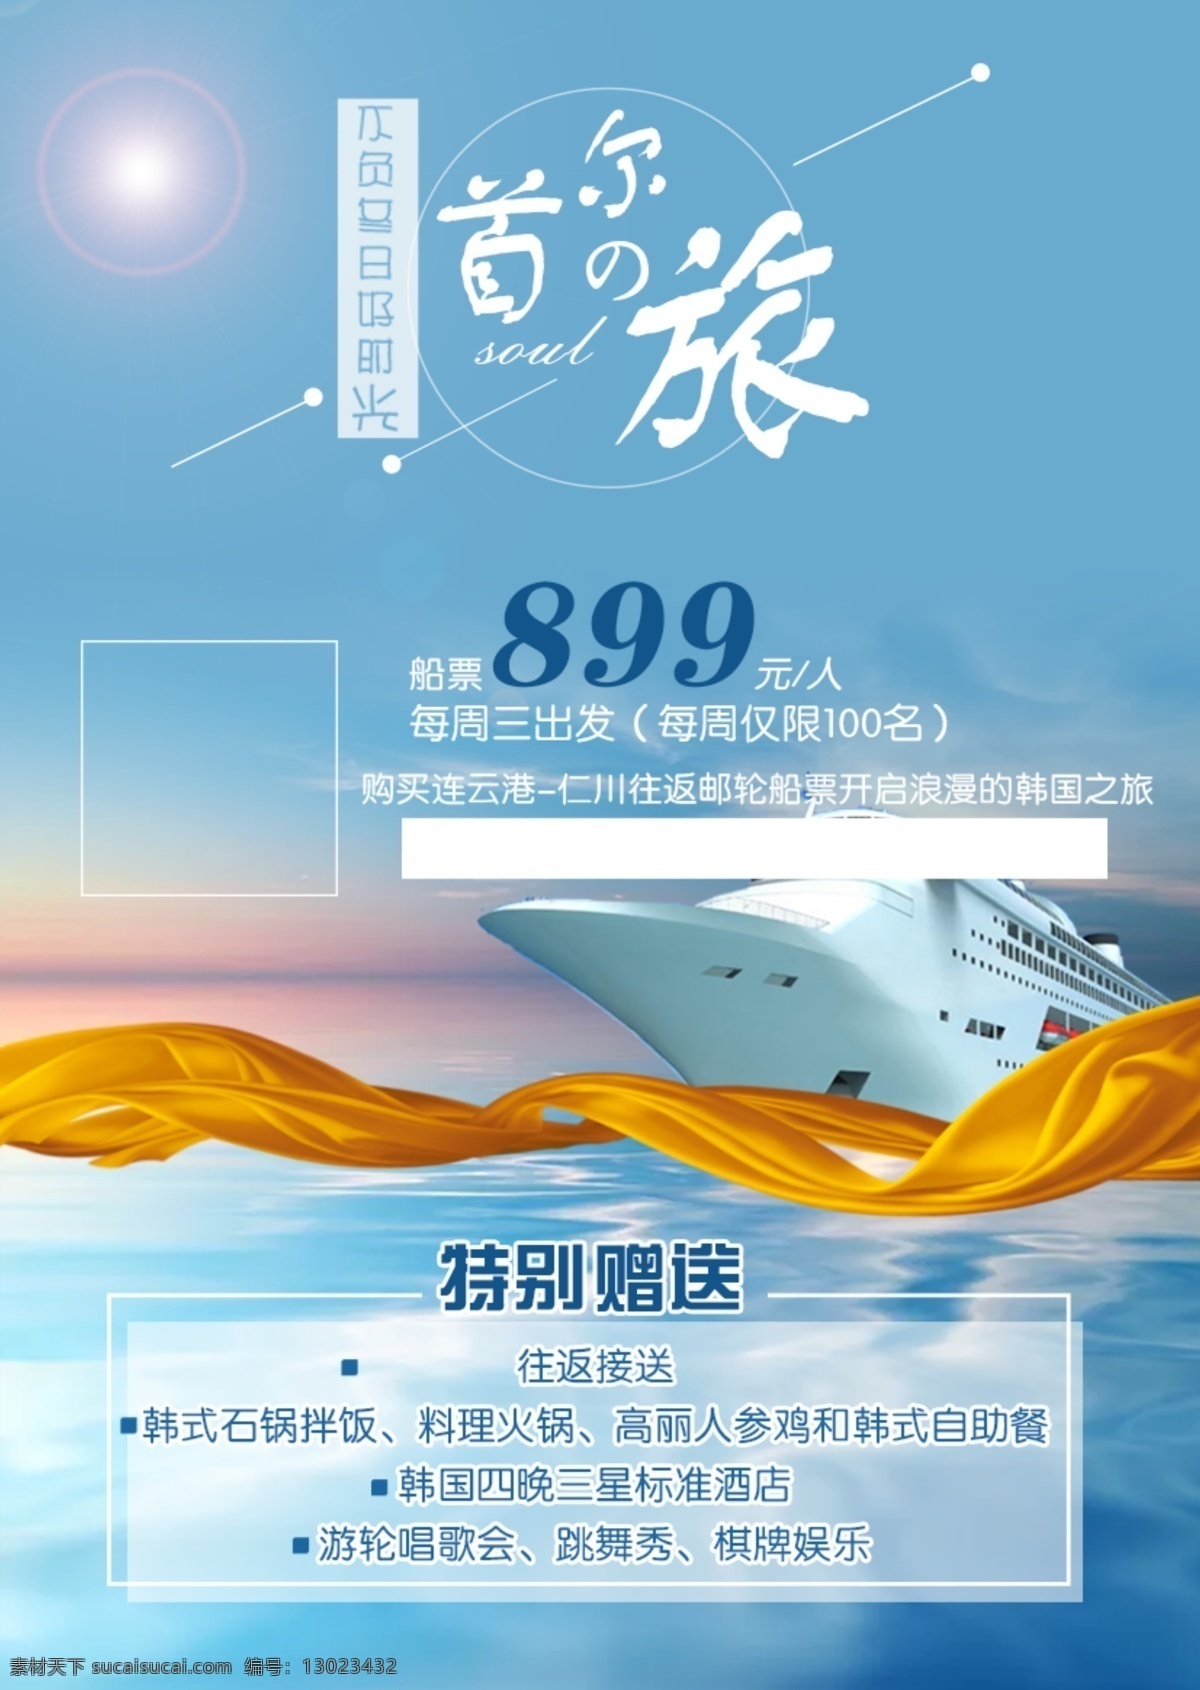 韩国 首 尔 游轮 之旅 首尔 邮轮 旅游 海报 微信